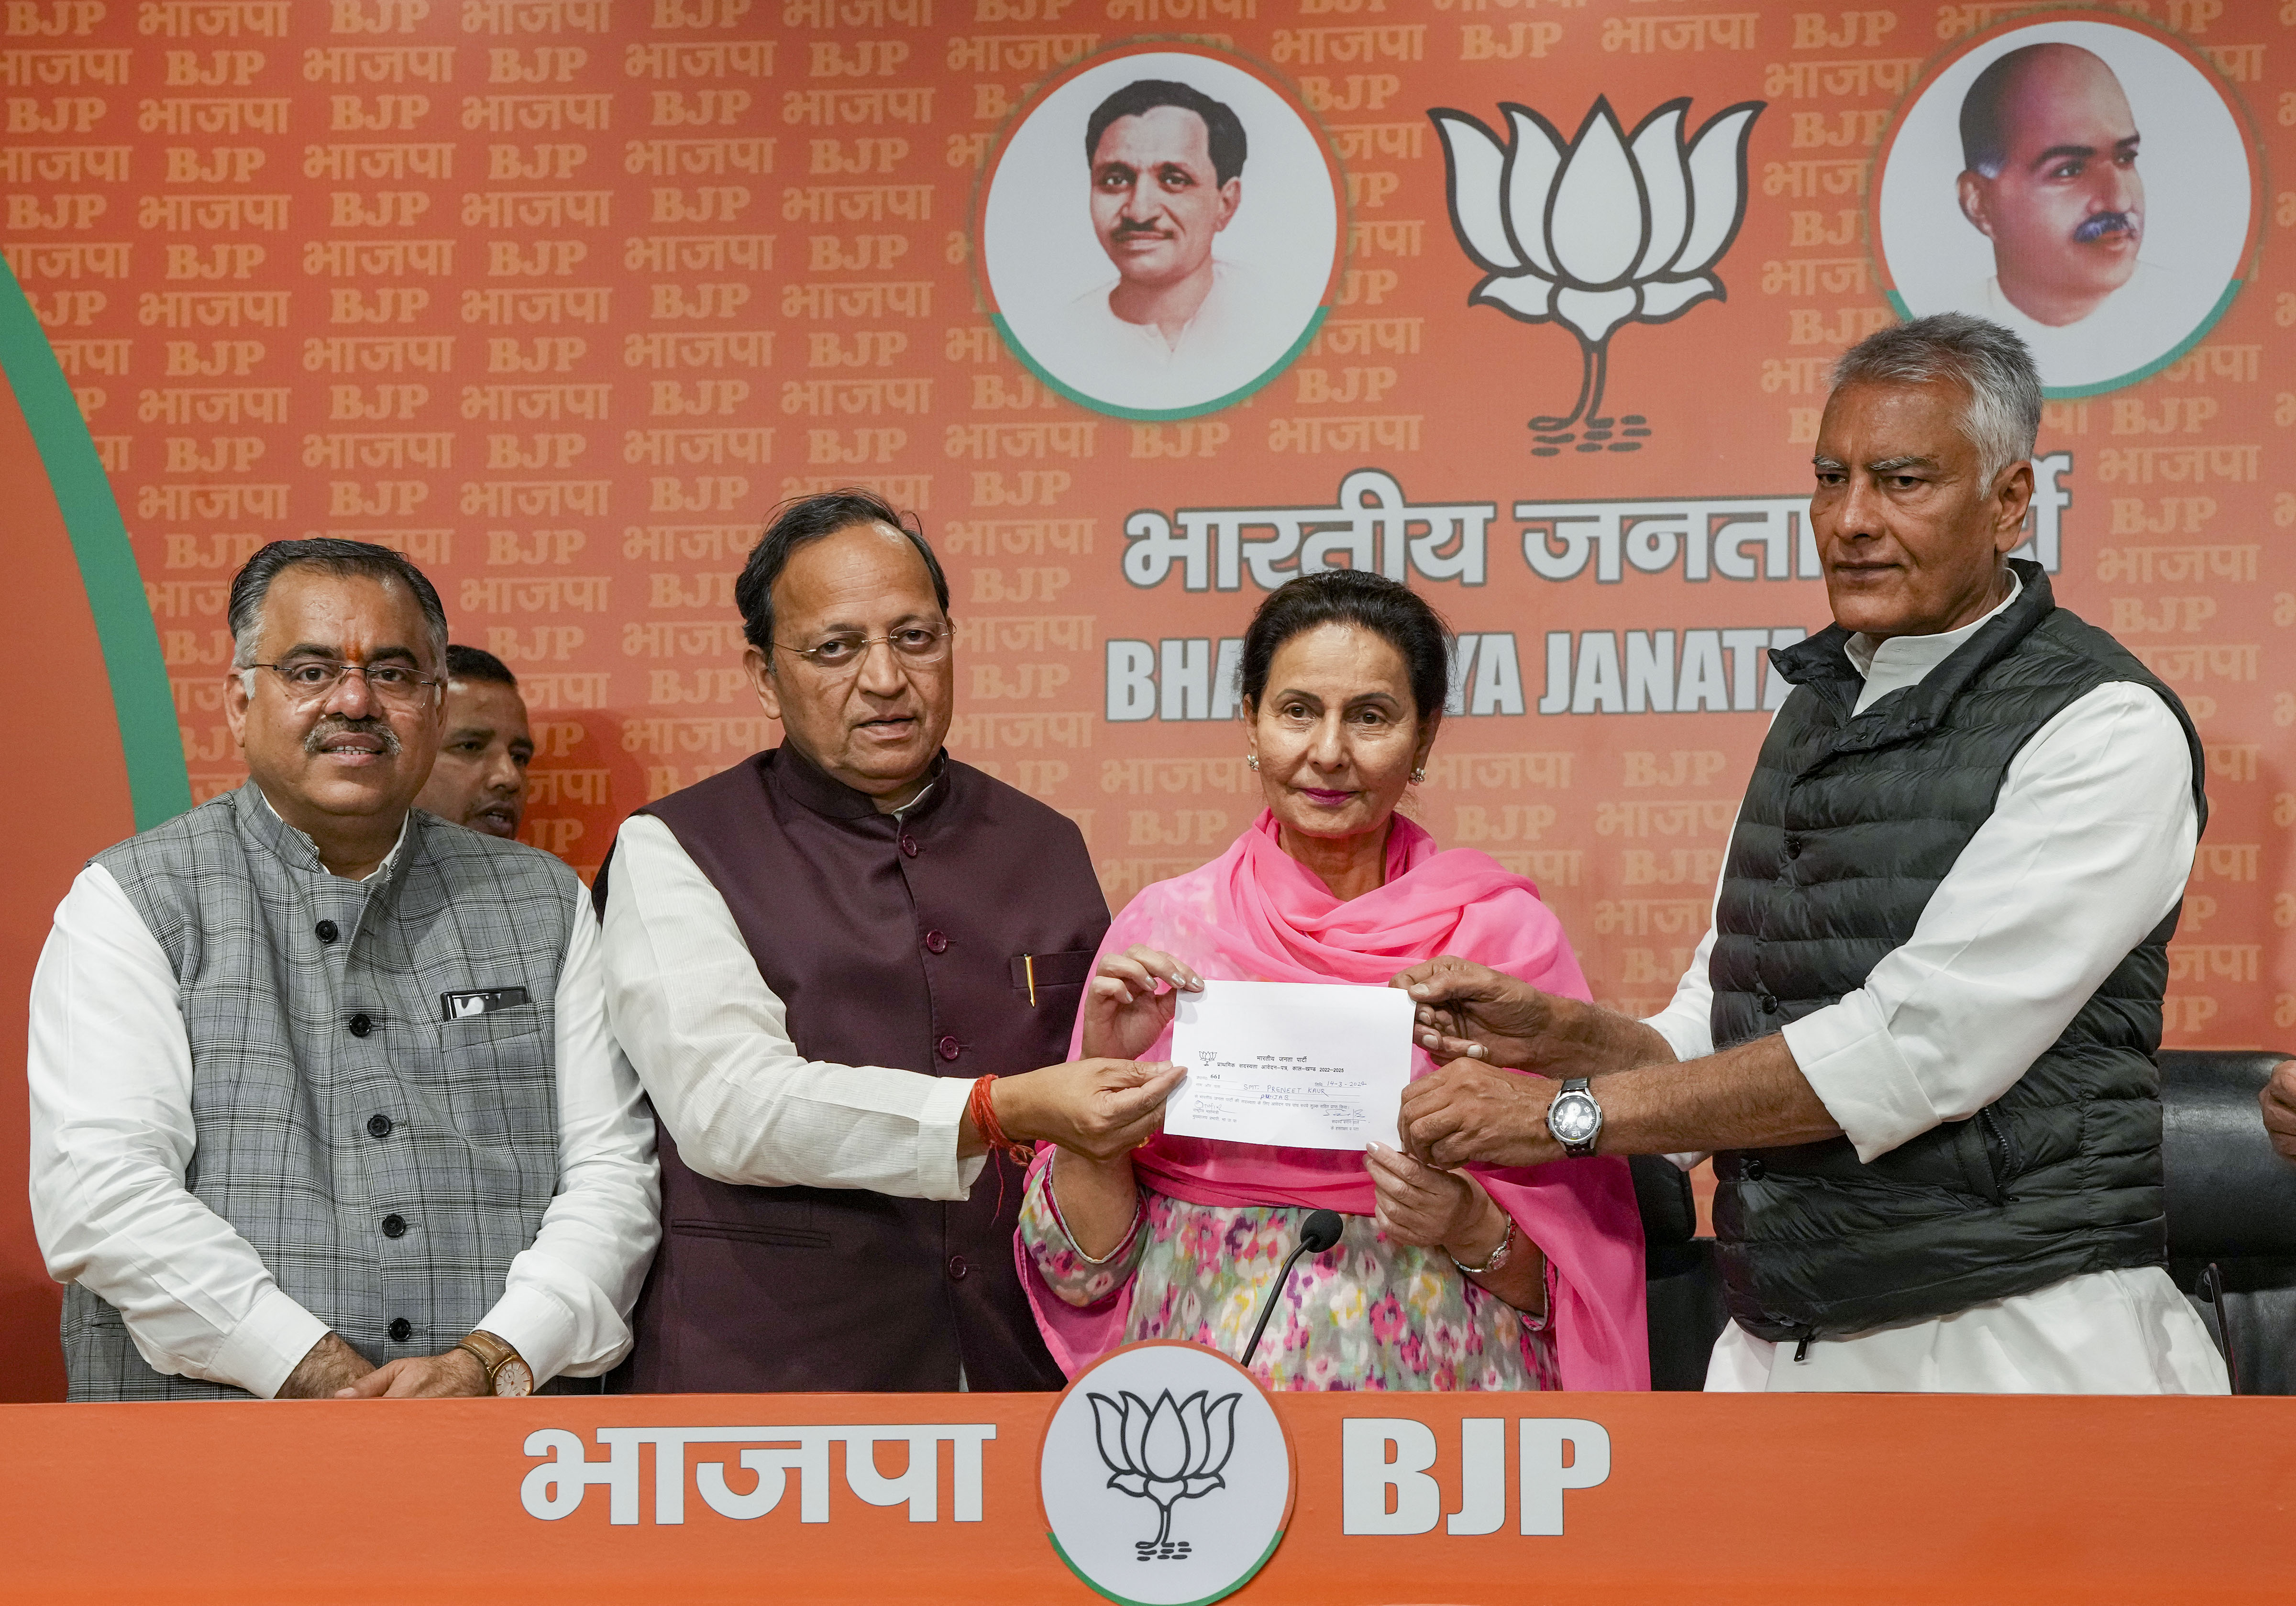 पंजाब: कैप्टन अमरिंदर सिंह की पत्नी कांग्रेस सांसद परनीत कौर BJP में हुईं शामिल